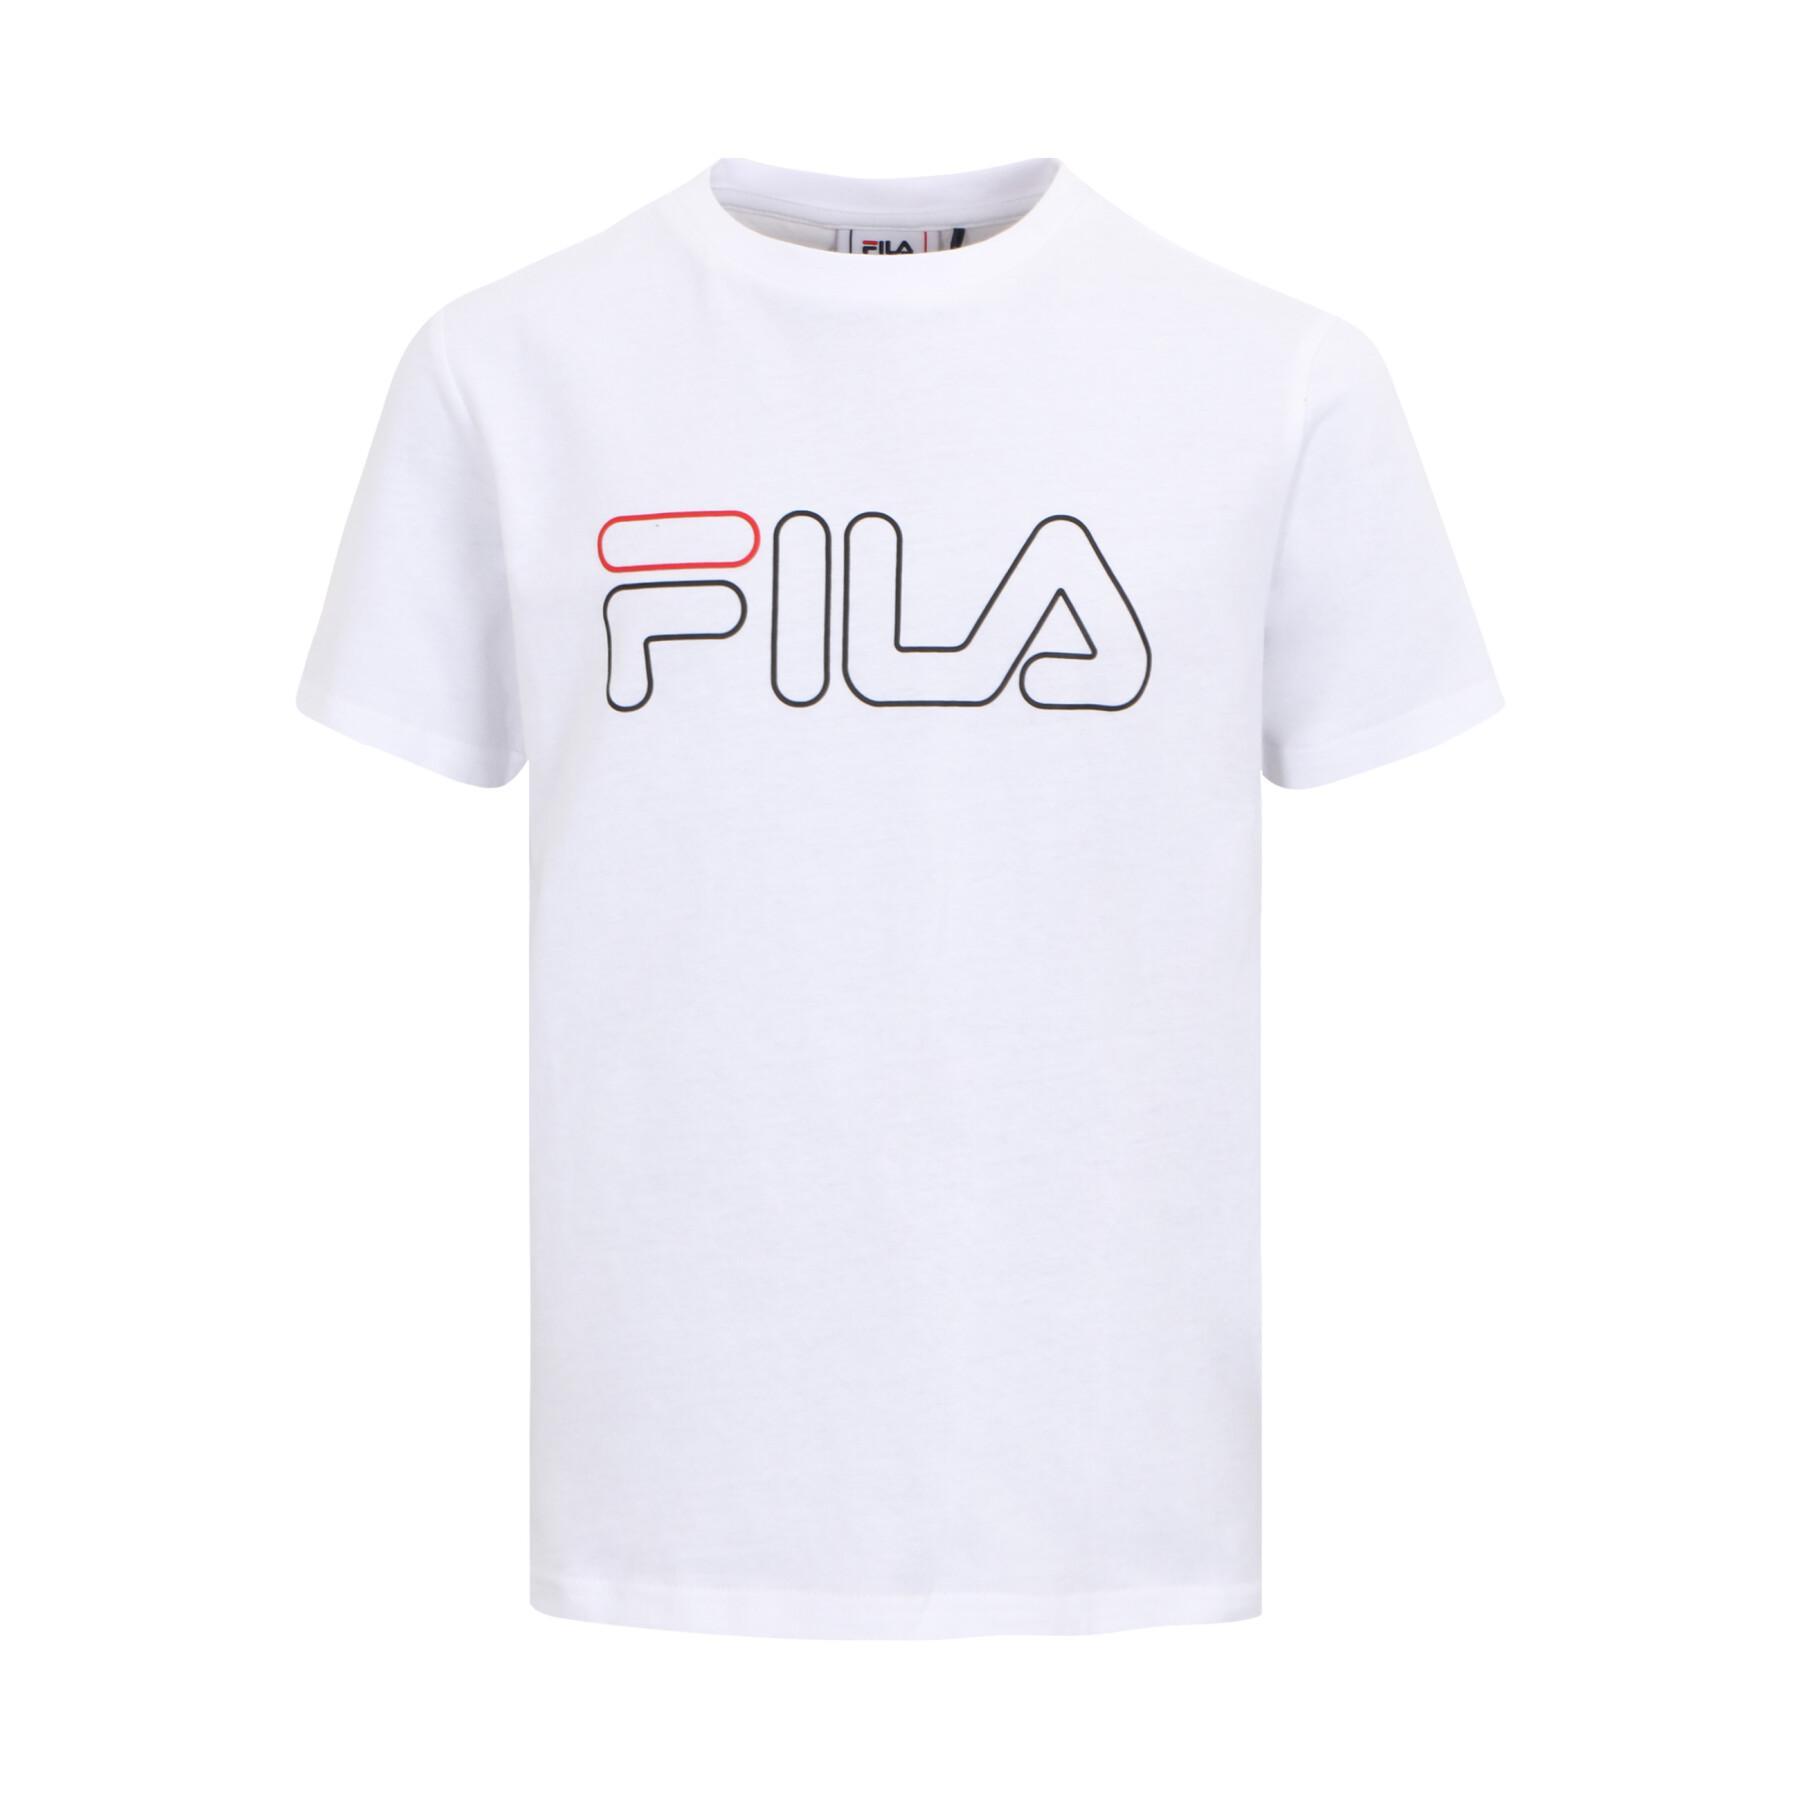 Kinder-T-shirt Fila Seelow